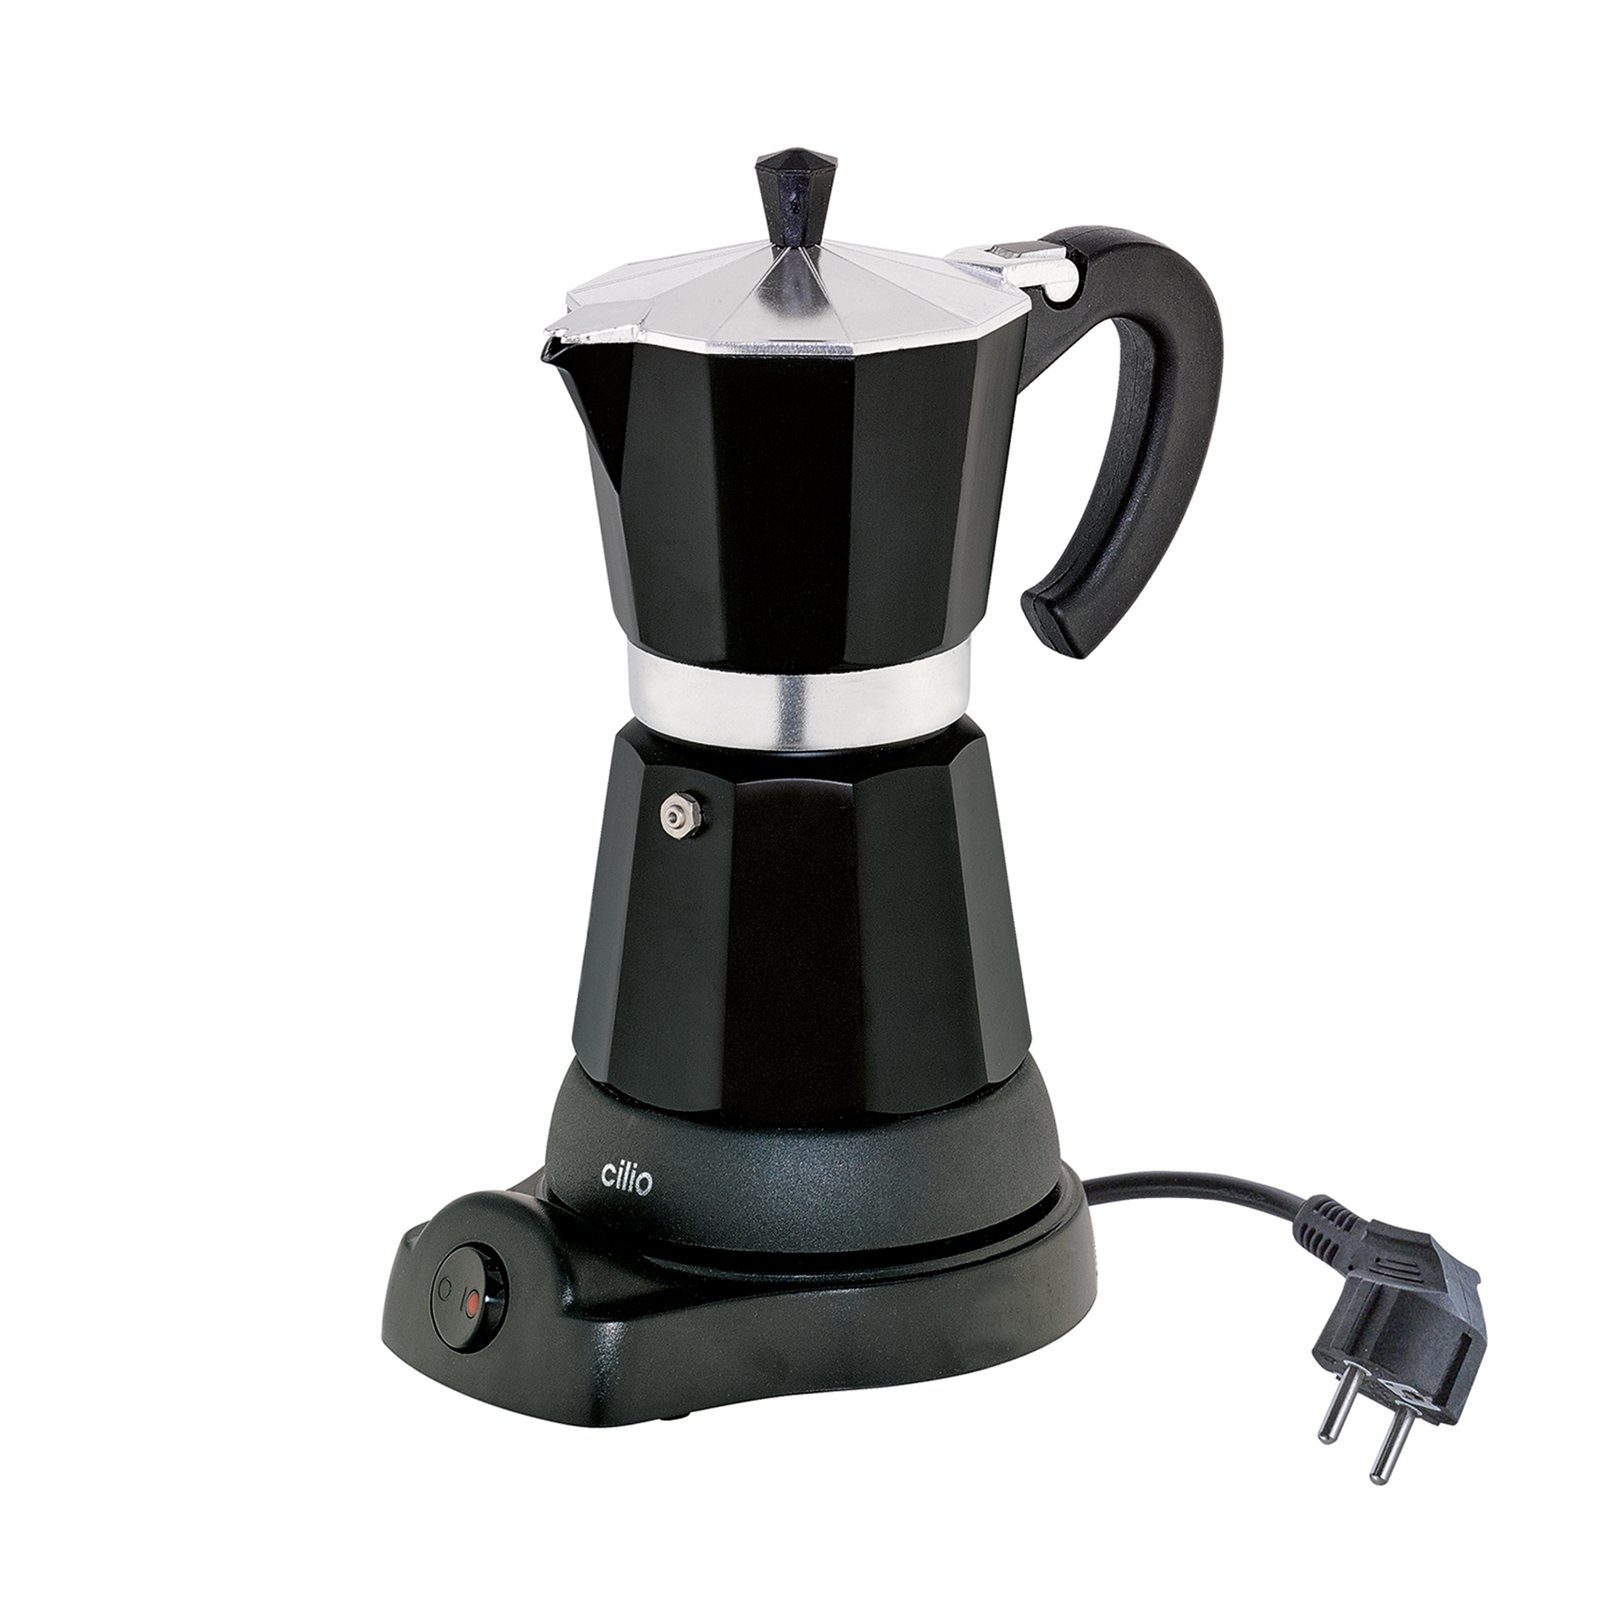 Cilio Espressokocher Elektrischer Espressokocher CLASSICO online kaufen |  OTTO